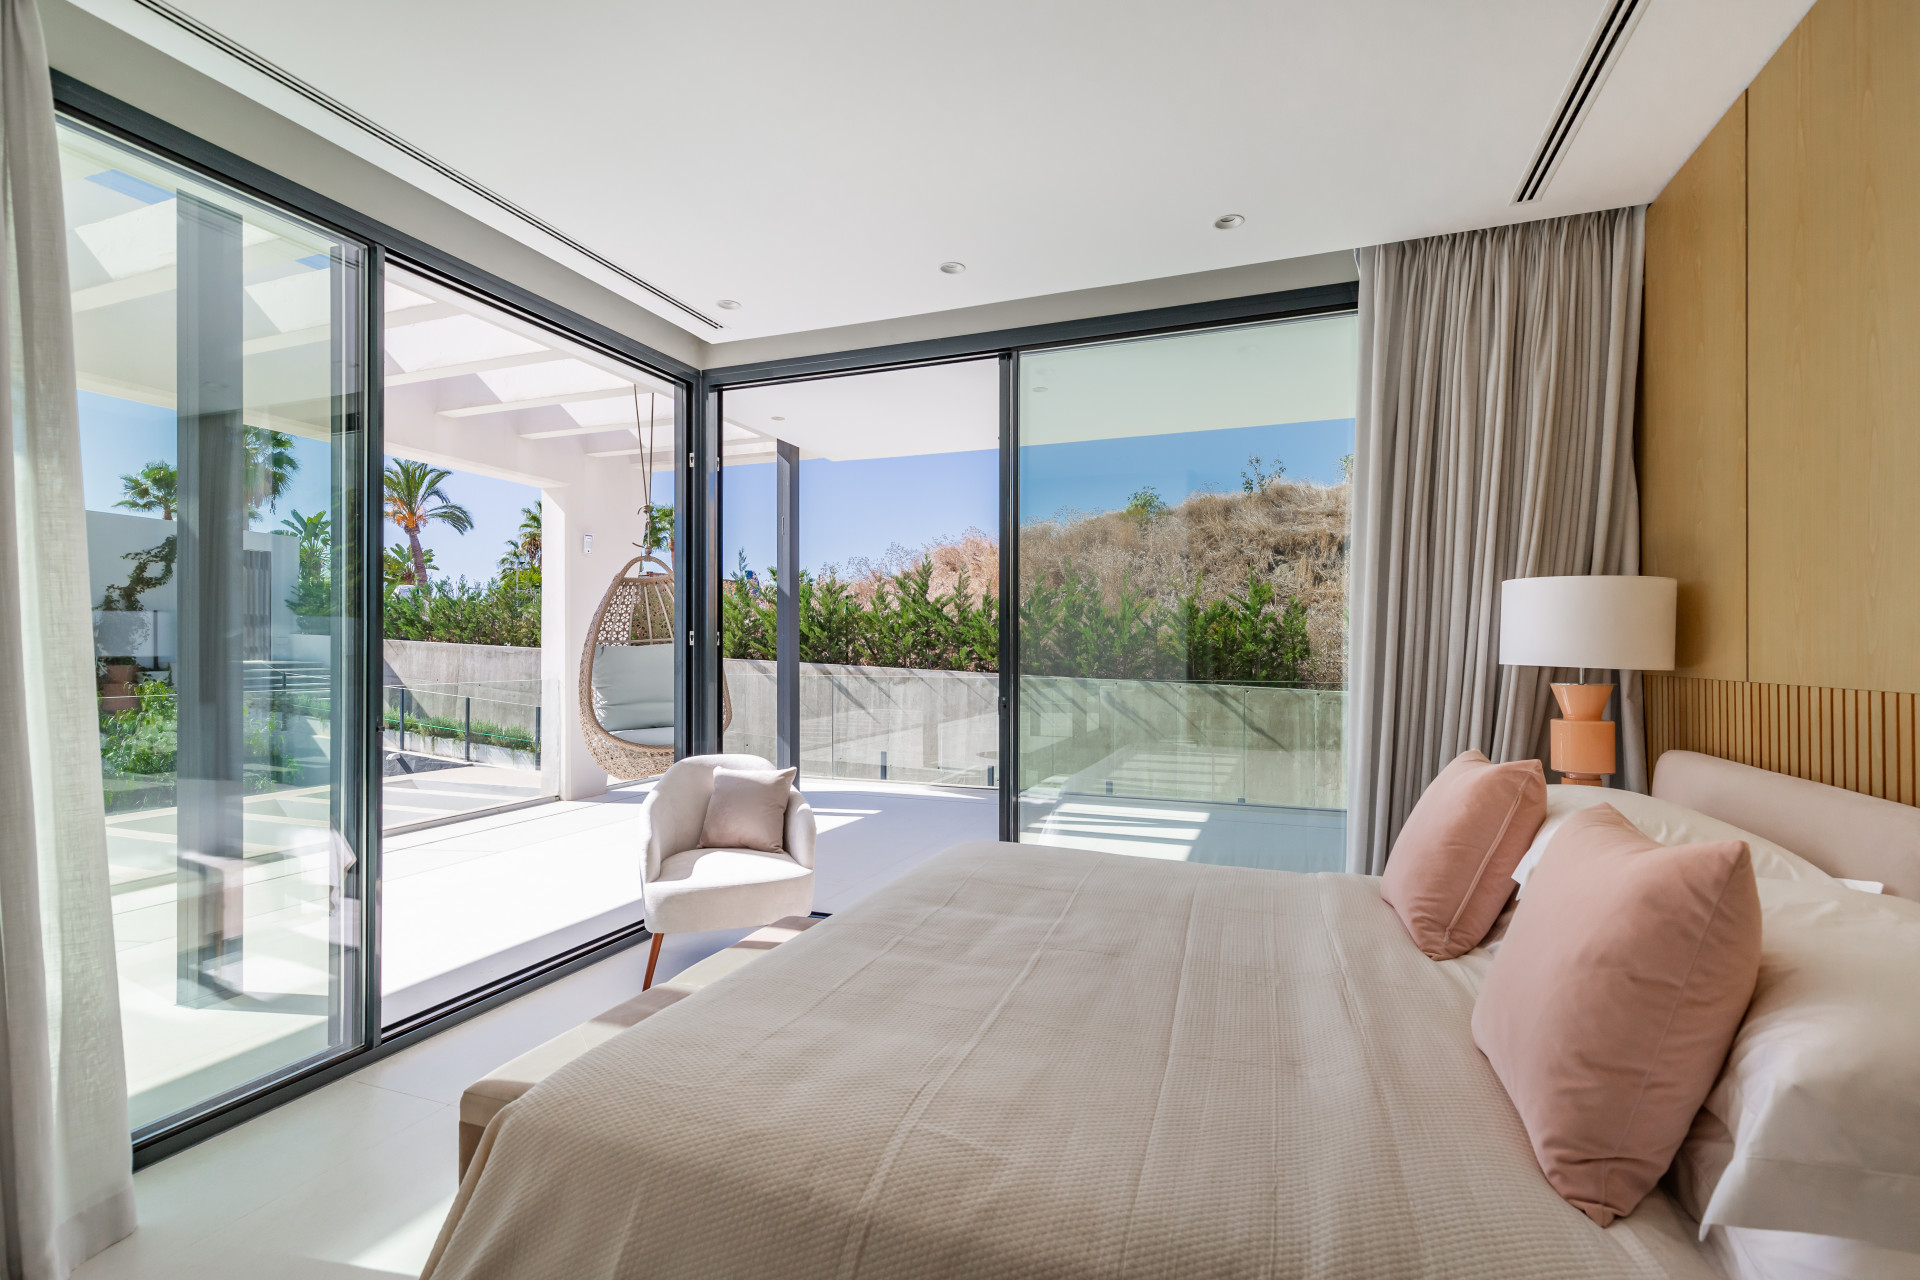 Excepcional villa contemporánea de 6 dormitorios en Nueva Andalucía, cerca de todas las comodidades y cerca del Club de Golf Los Naranjos.